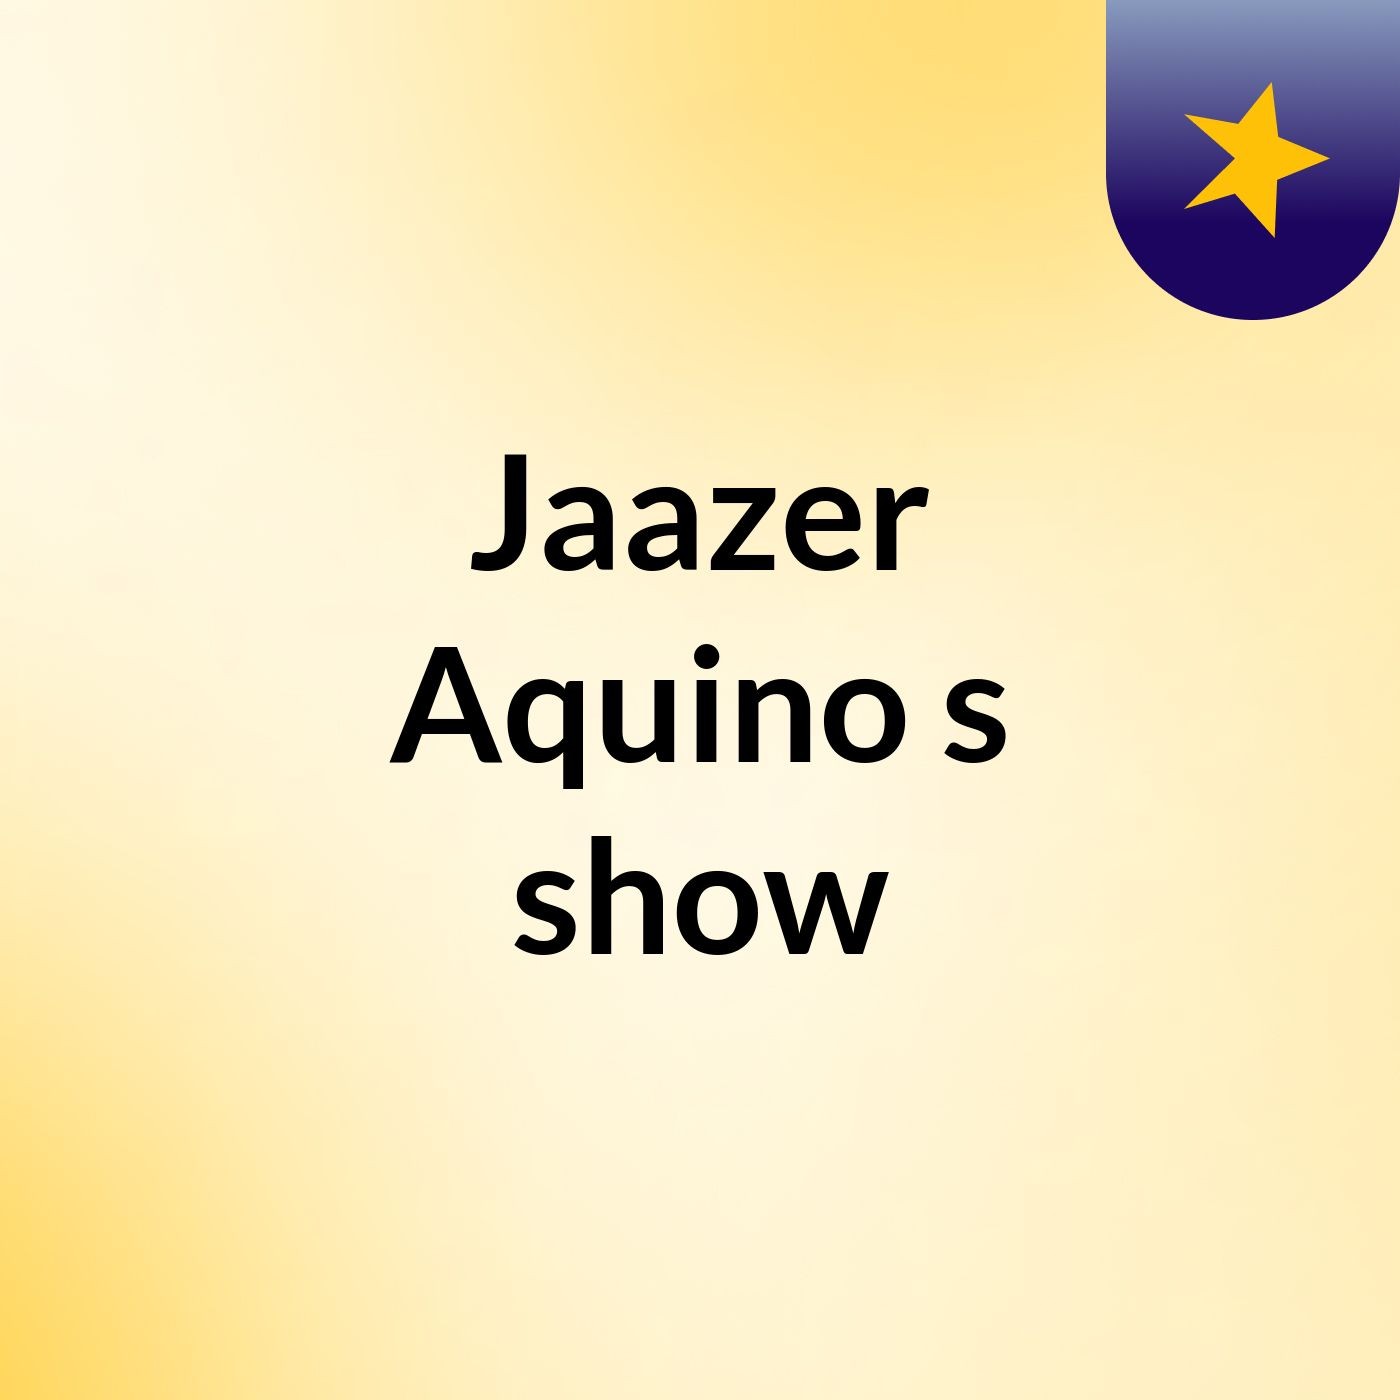 Jaazer Aquino's show